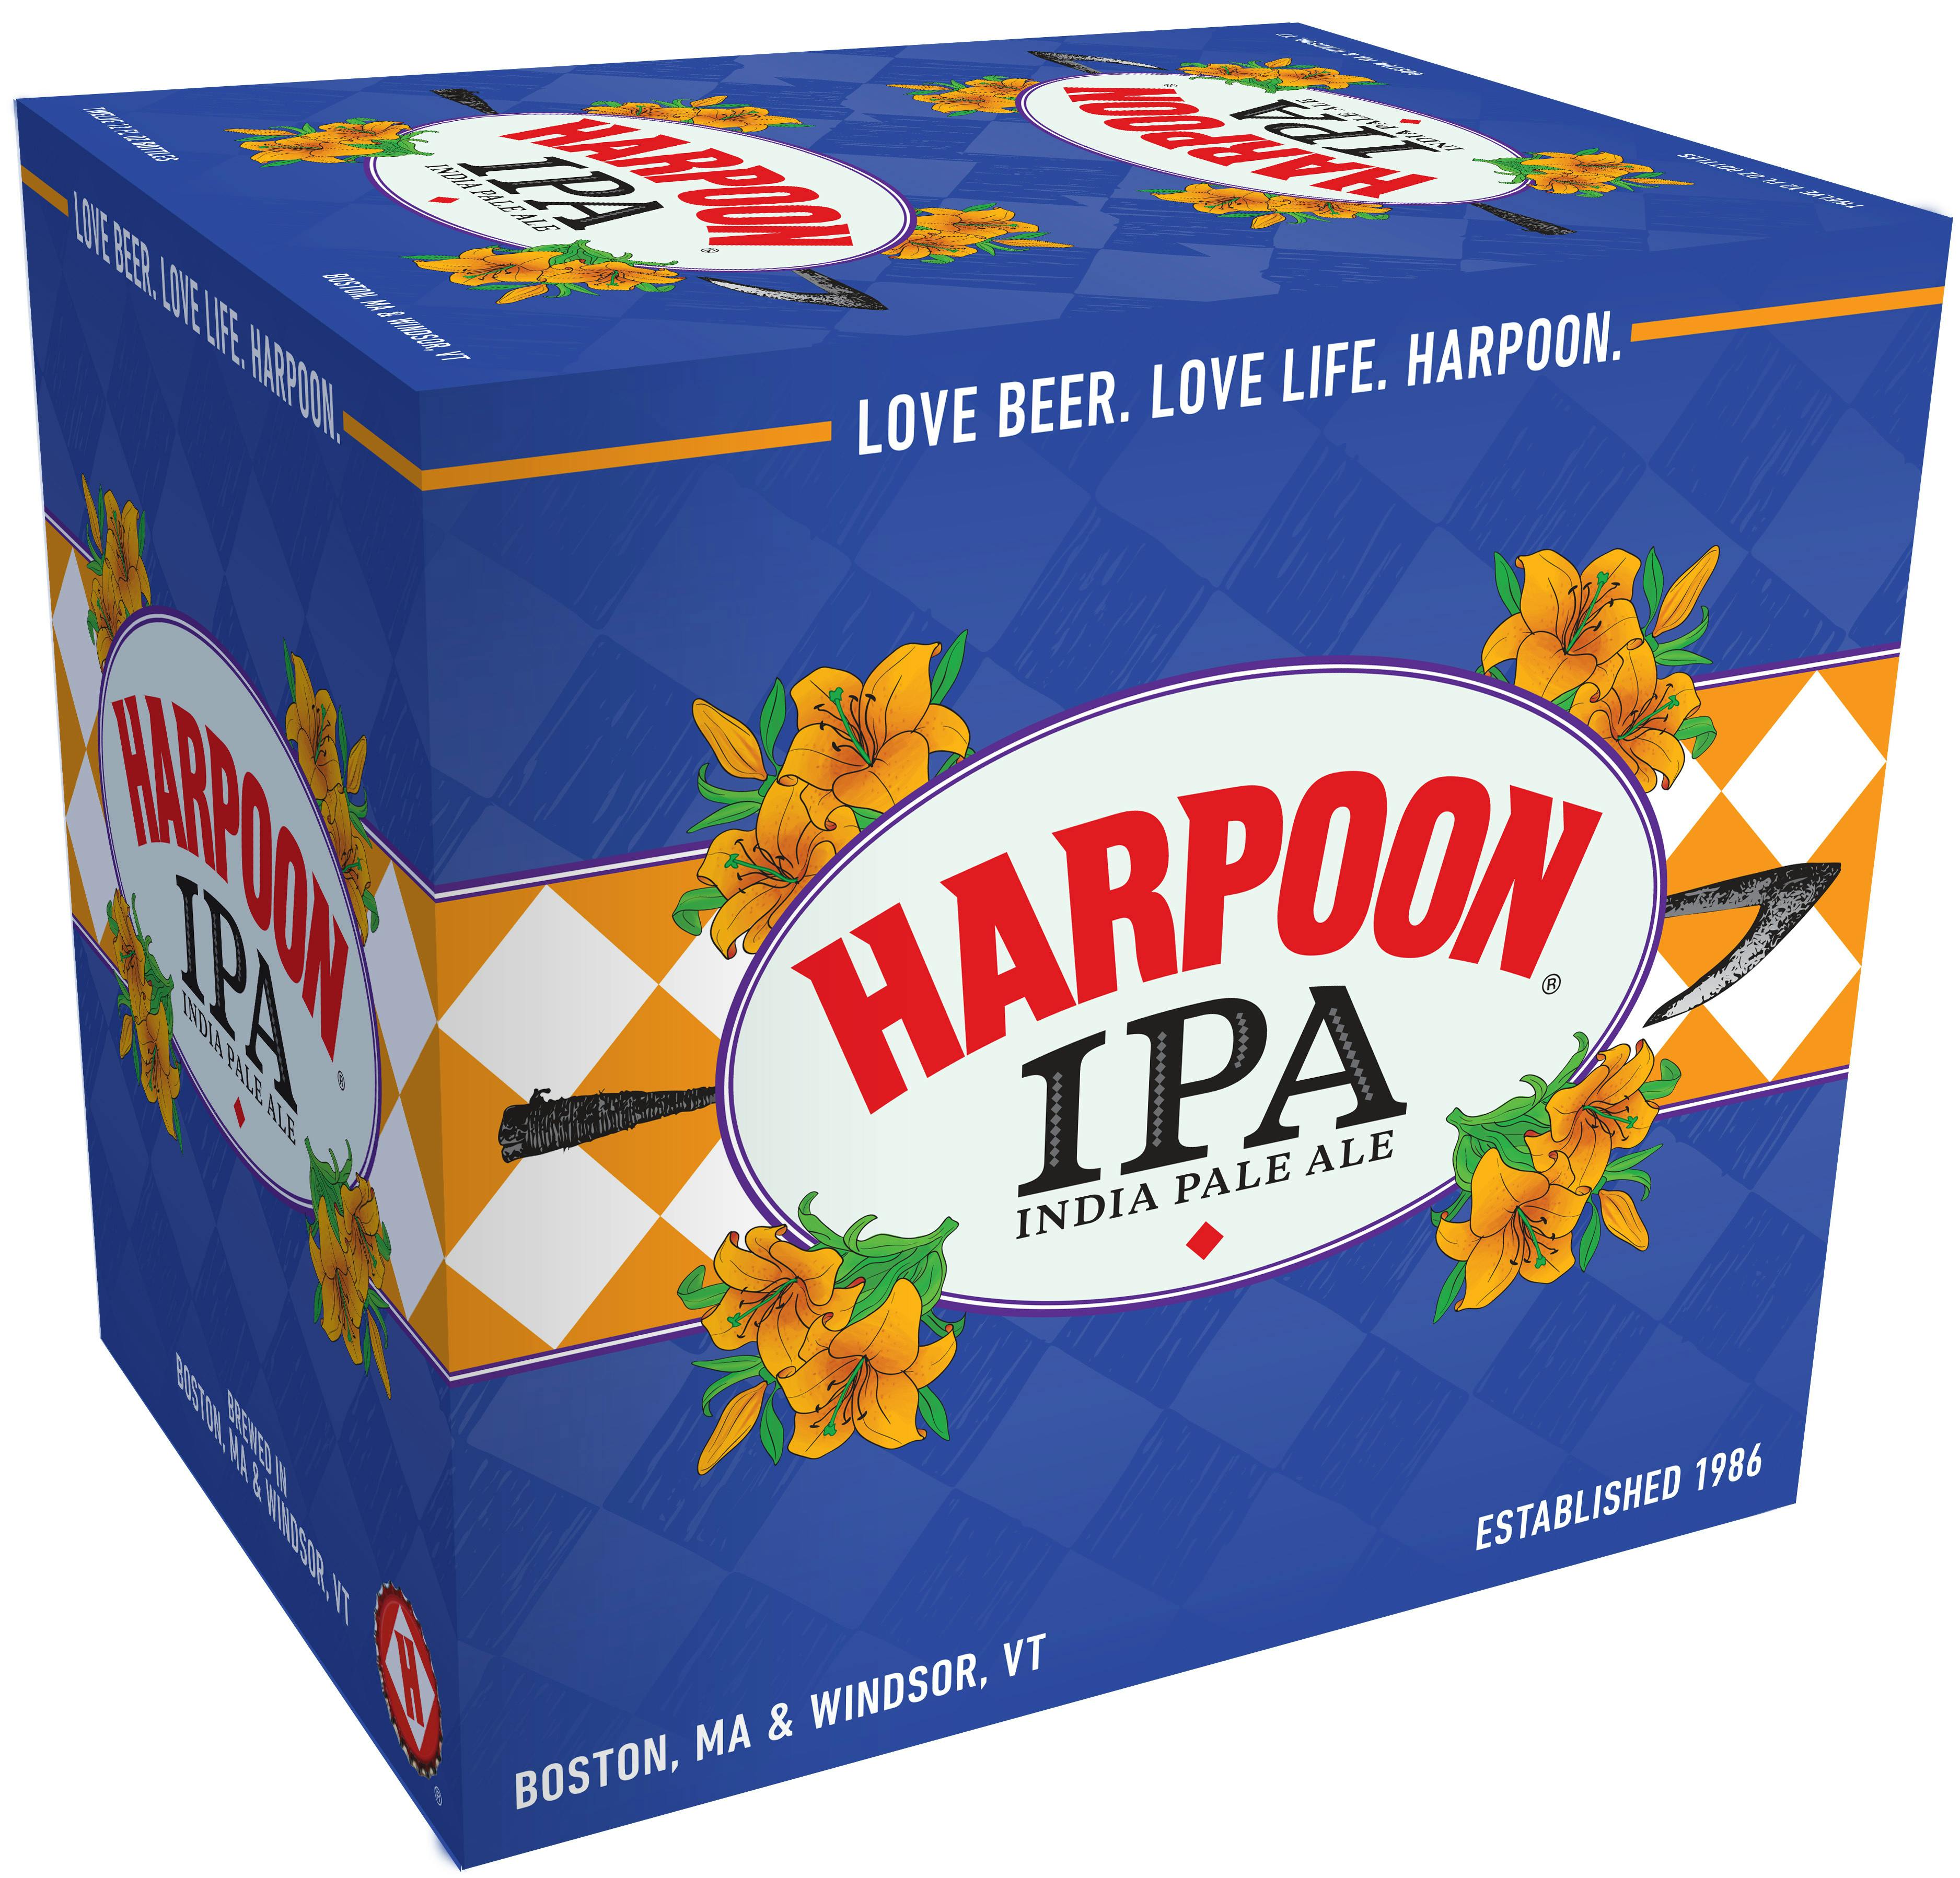 pkg 211 harpoon beer